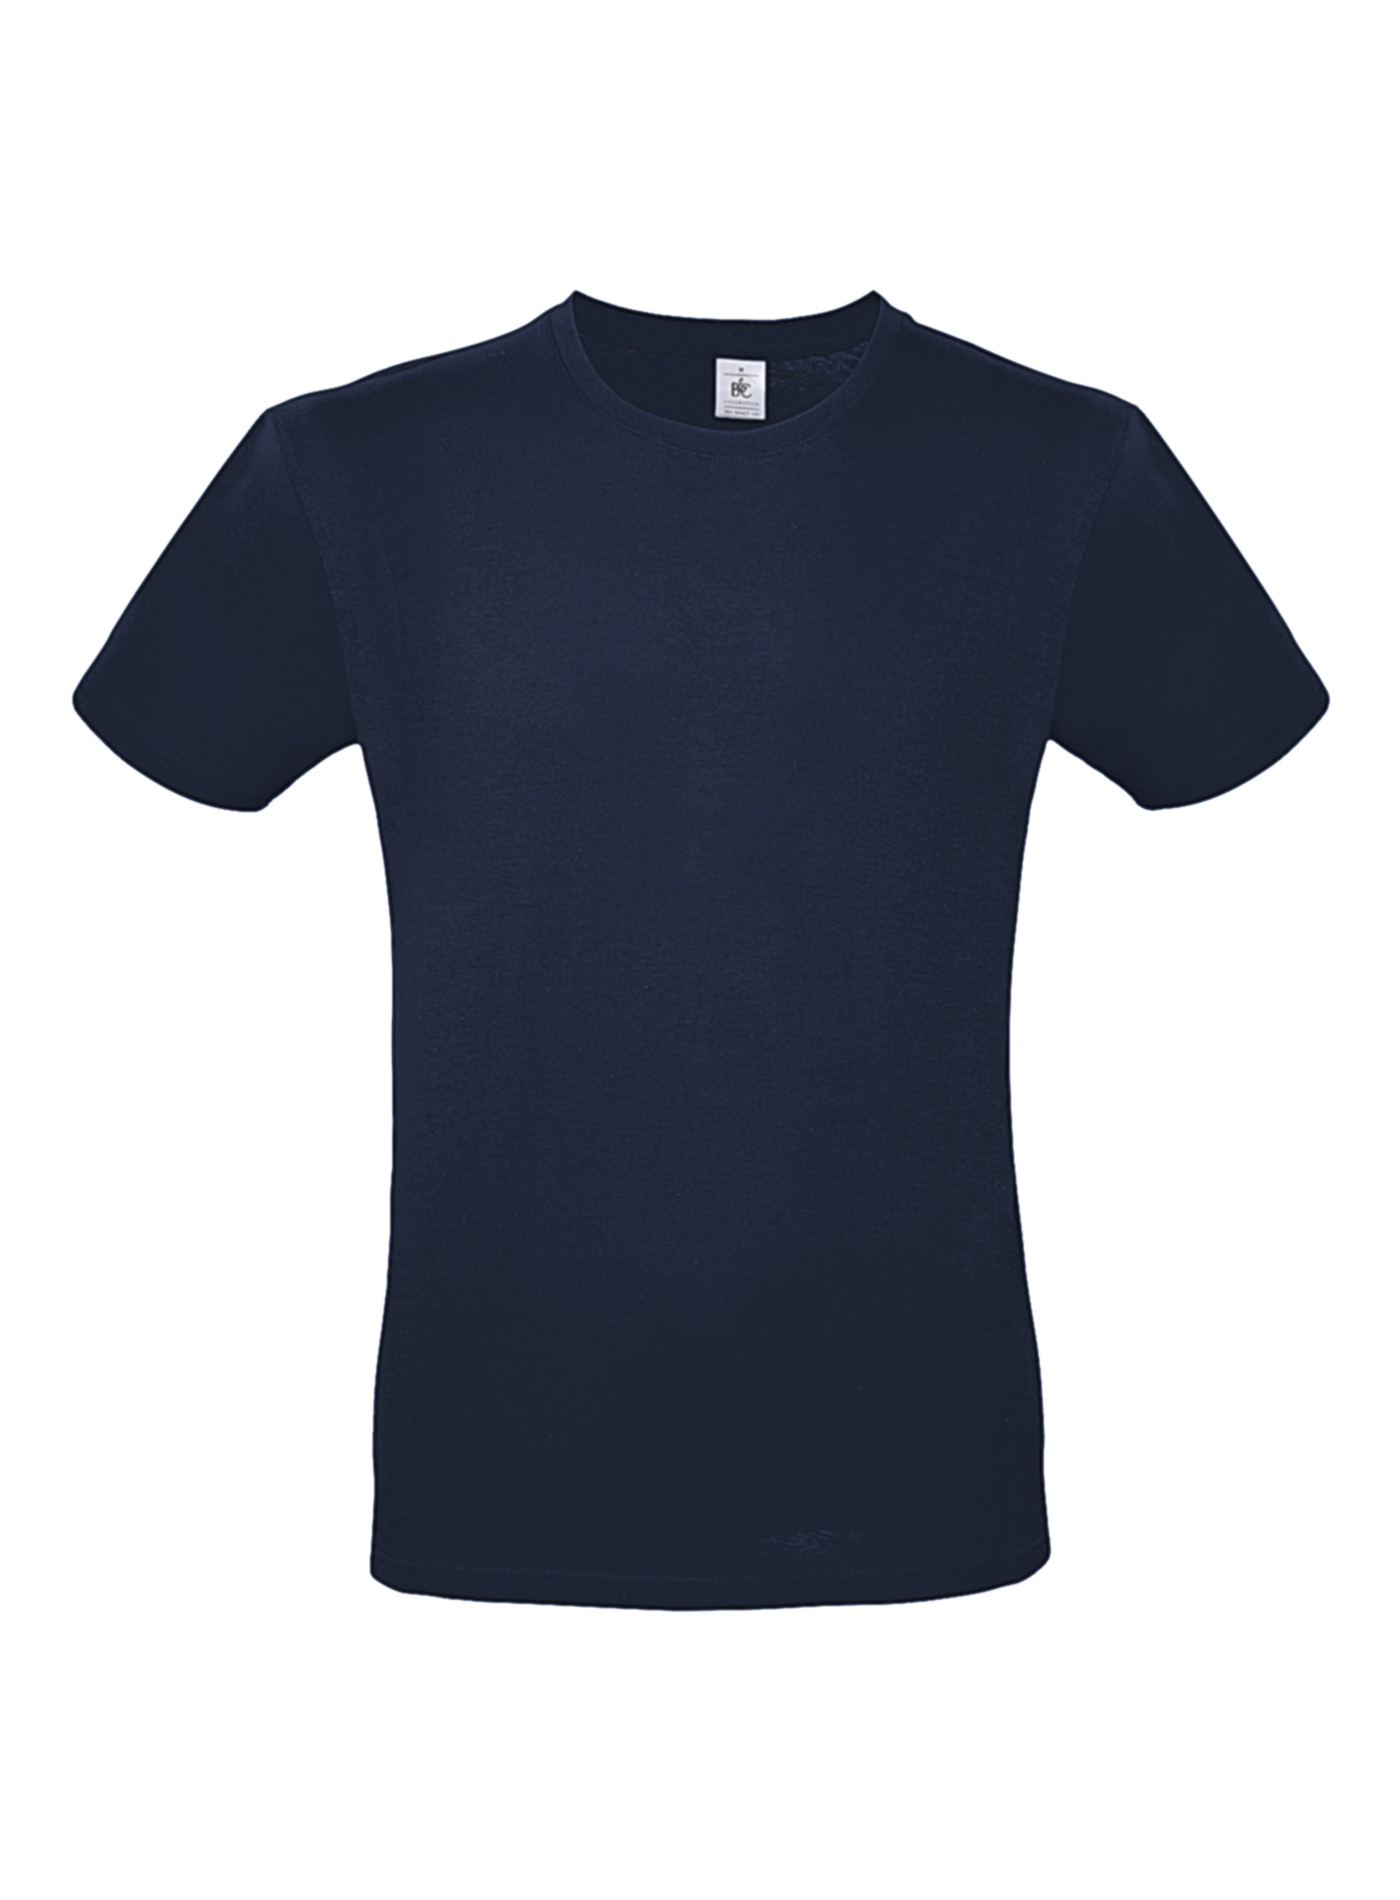 Pánské tričko B&C - Námořní modrá XS